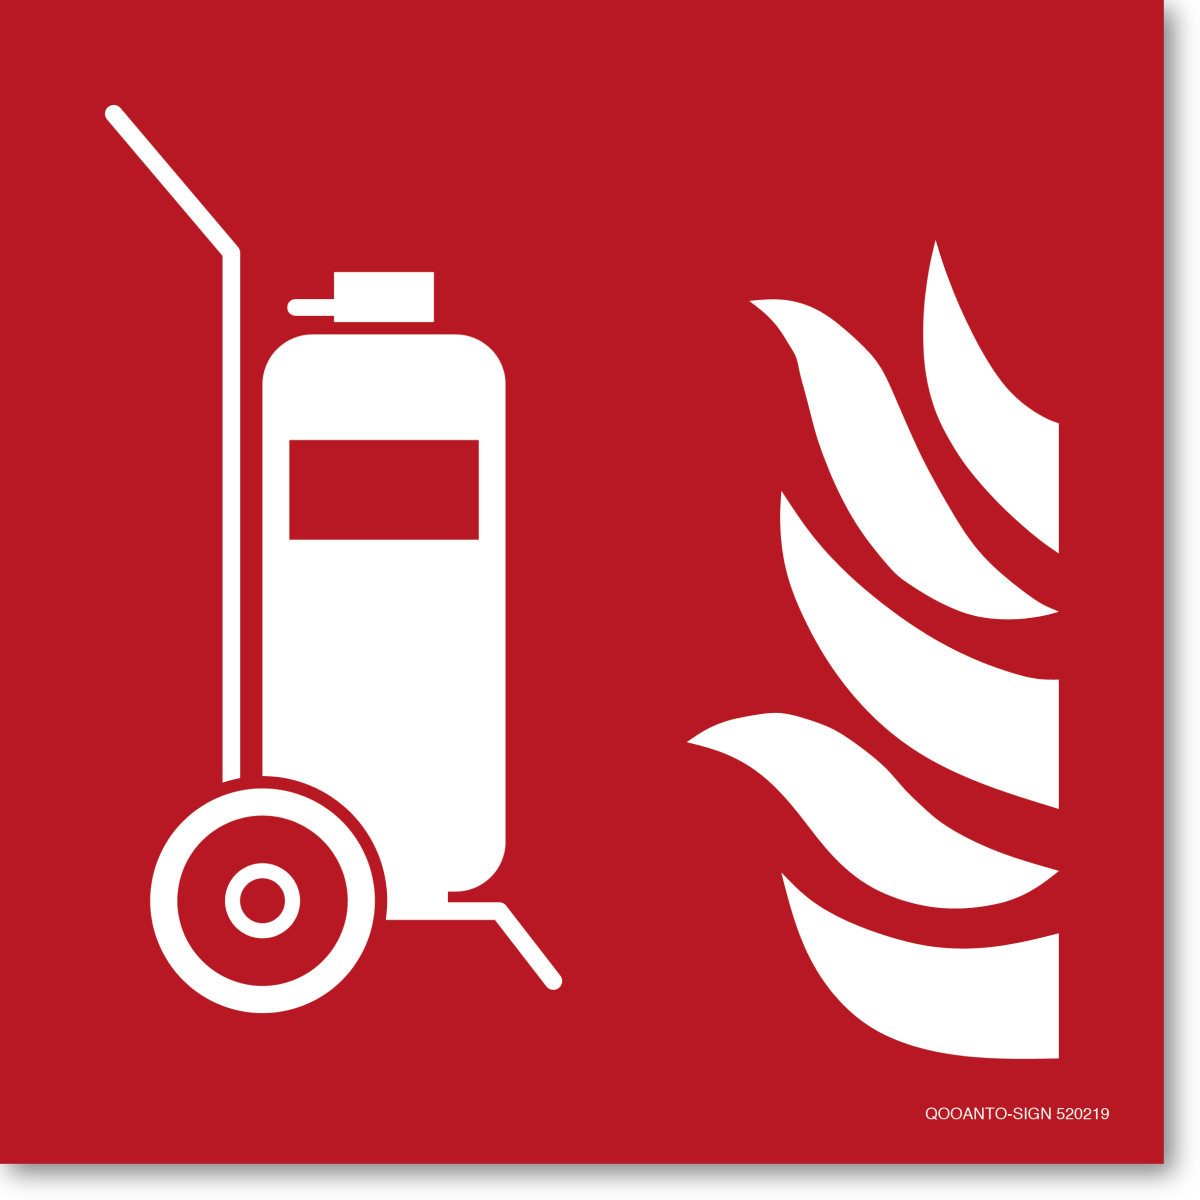 Fahrbarer Feuerlöscher, EN ISO 7010, F009 Brandschutzschild oder Aufkleber aus Alu-Verbund oder Selbstklebefolie mit UV-Schutz - QOOANTO-SIGN